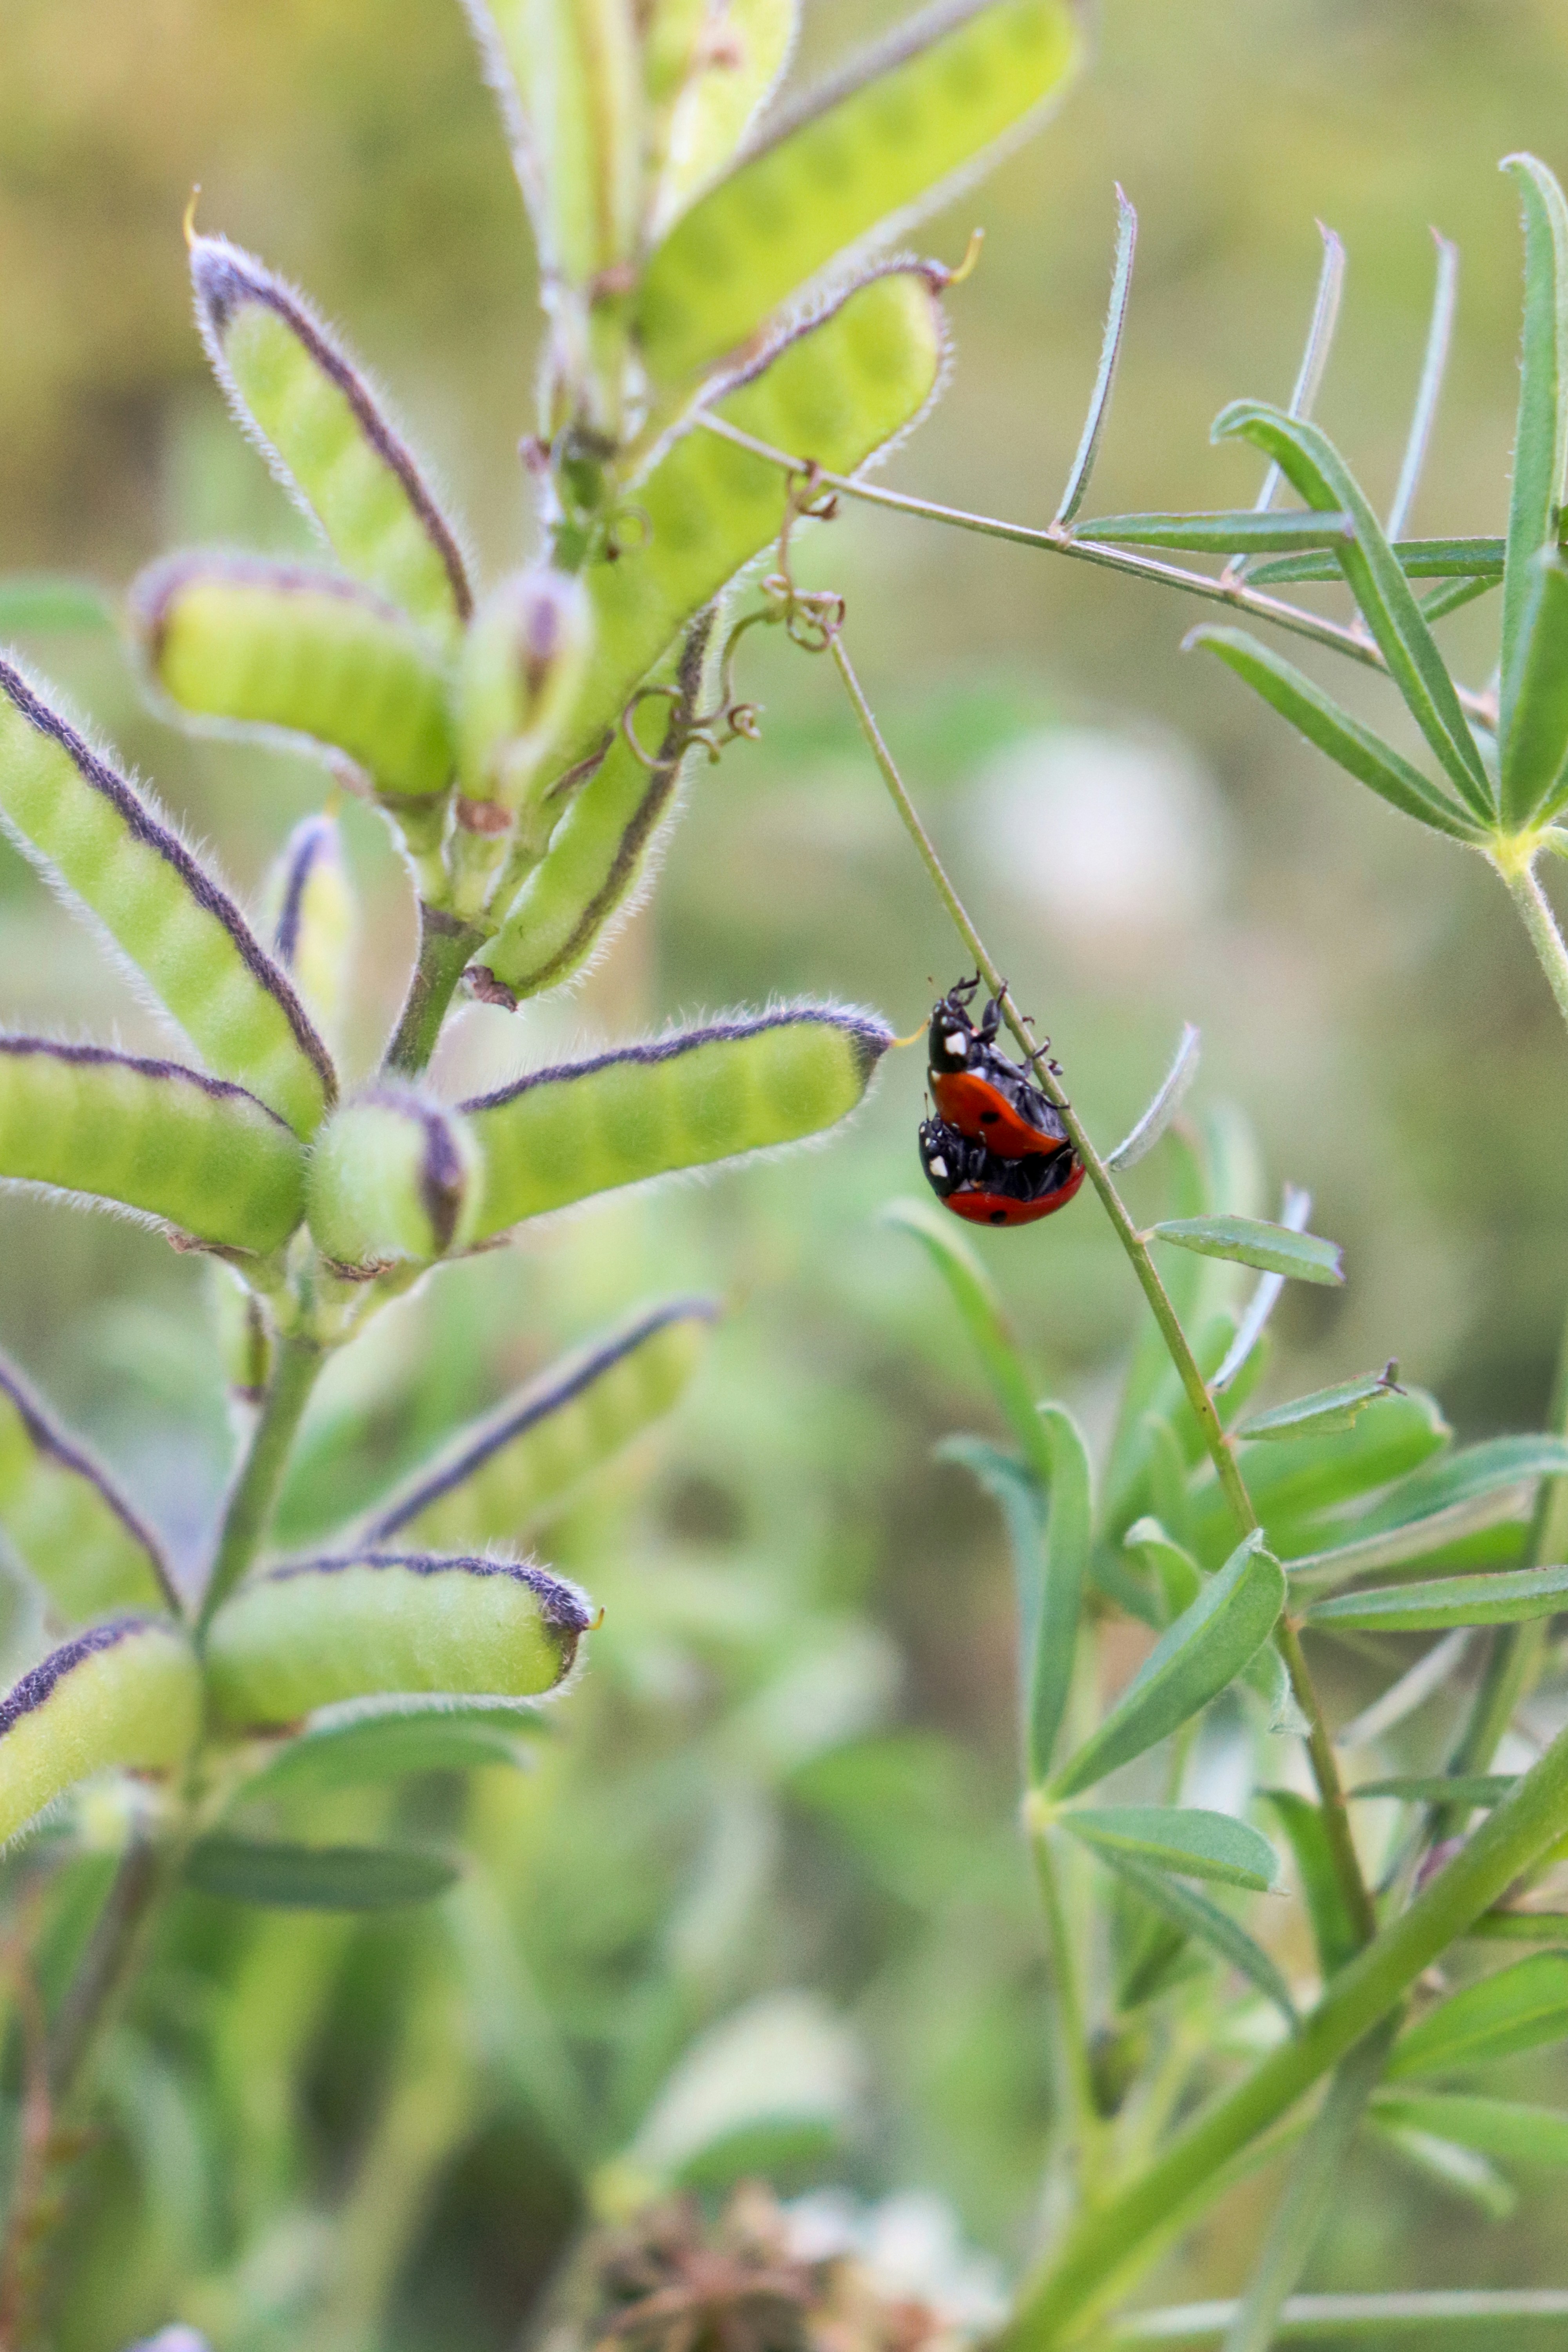 Ladybugs climbing leaf stem.